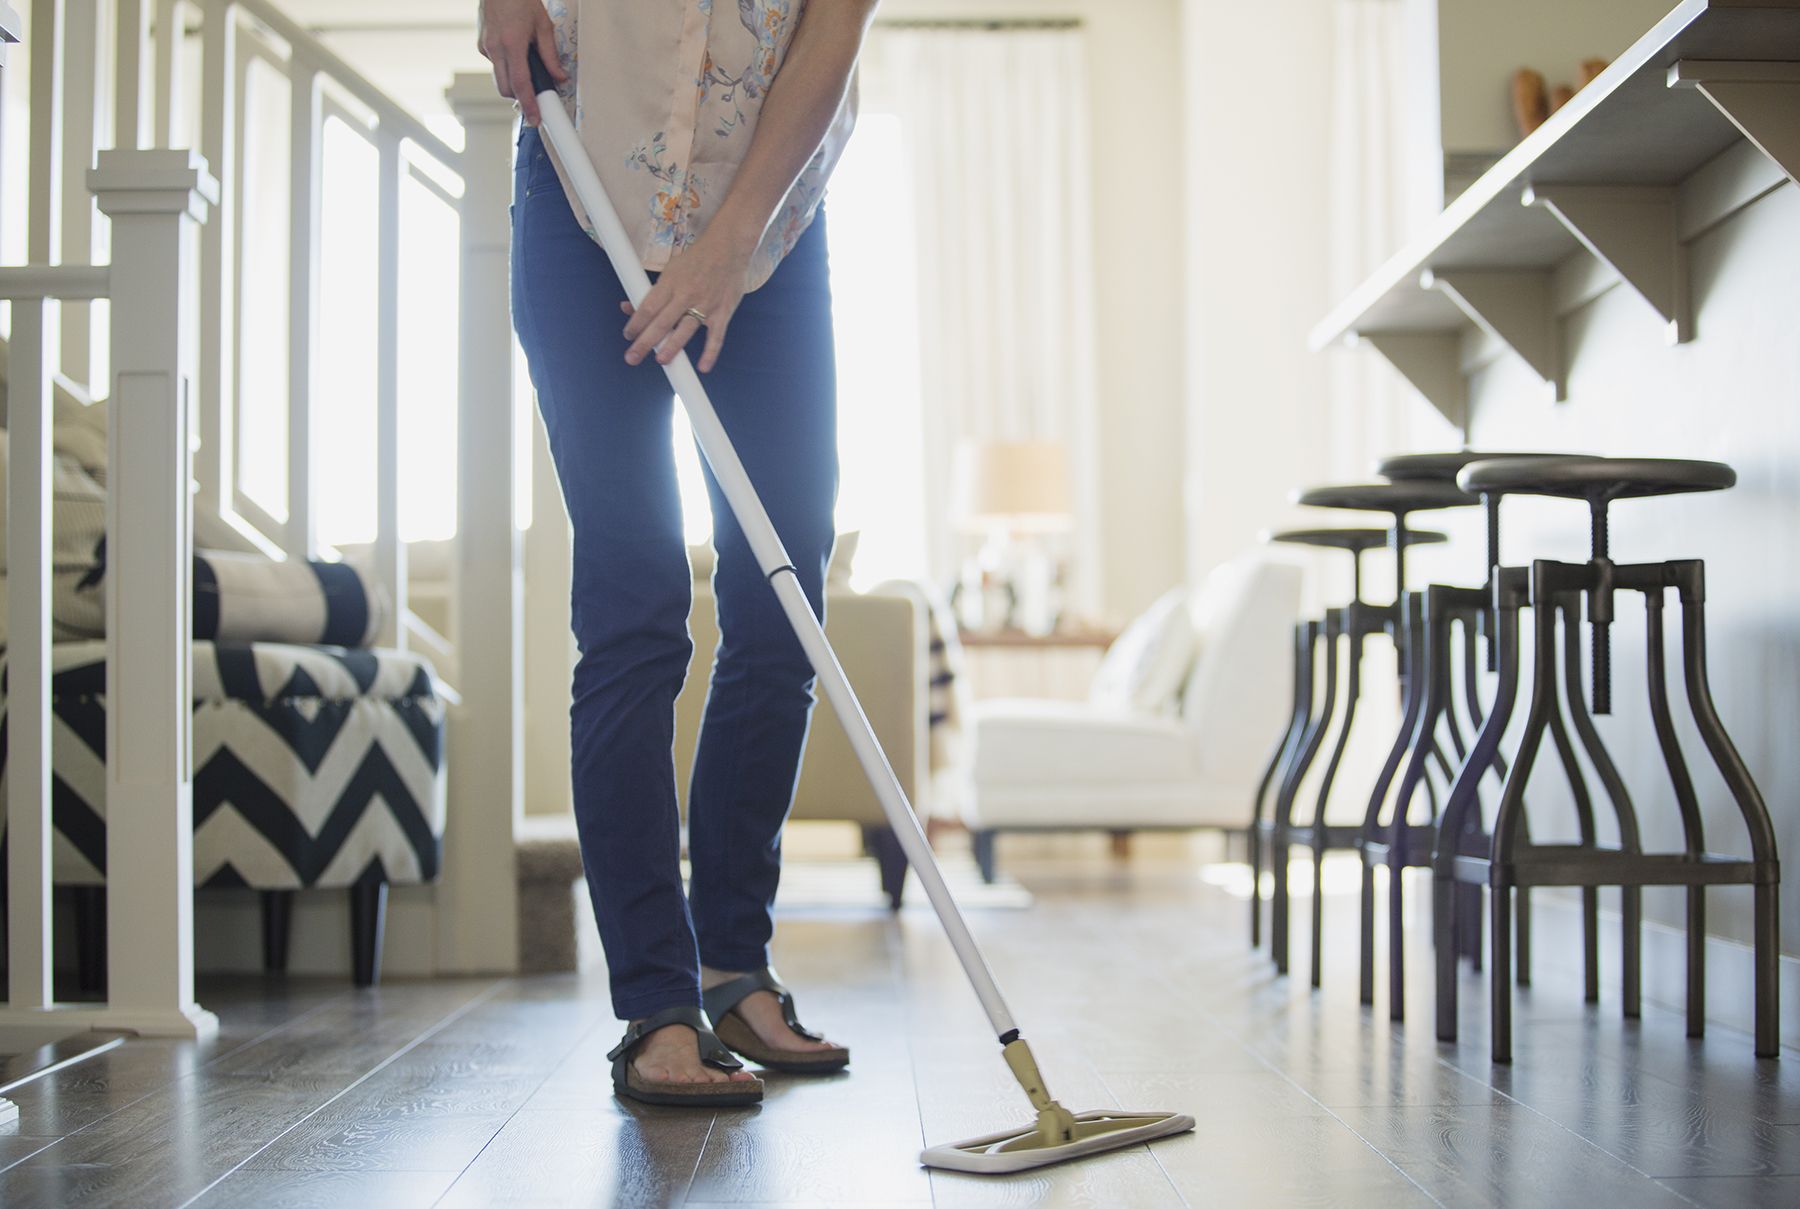 Sådan rengøres 7 af de sværeste overflader i dit hjem, ifølge profferne